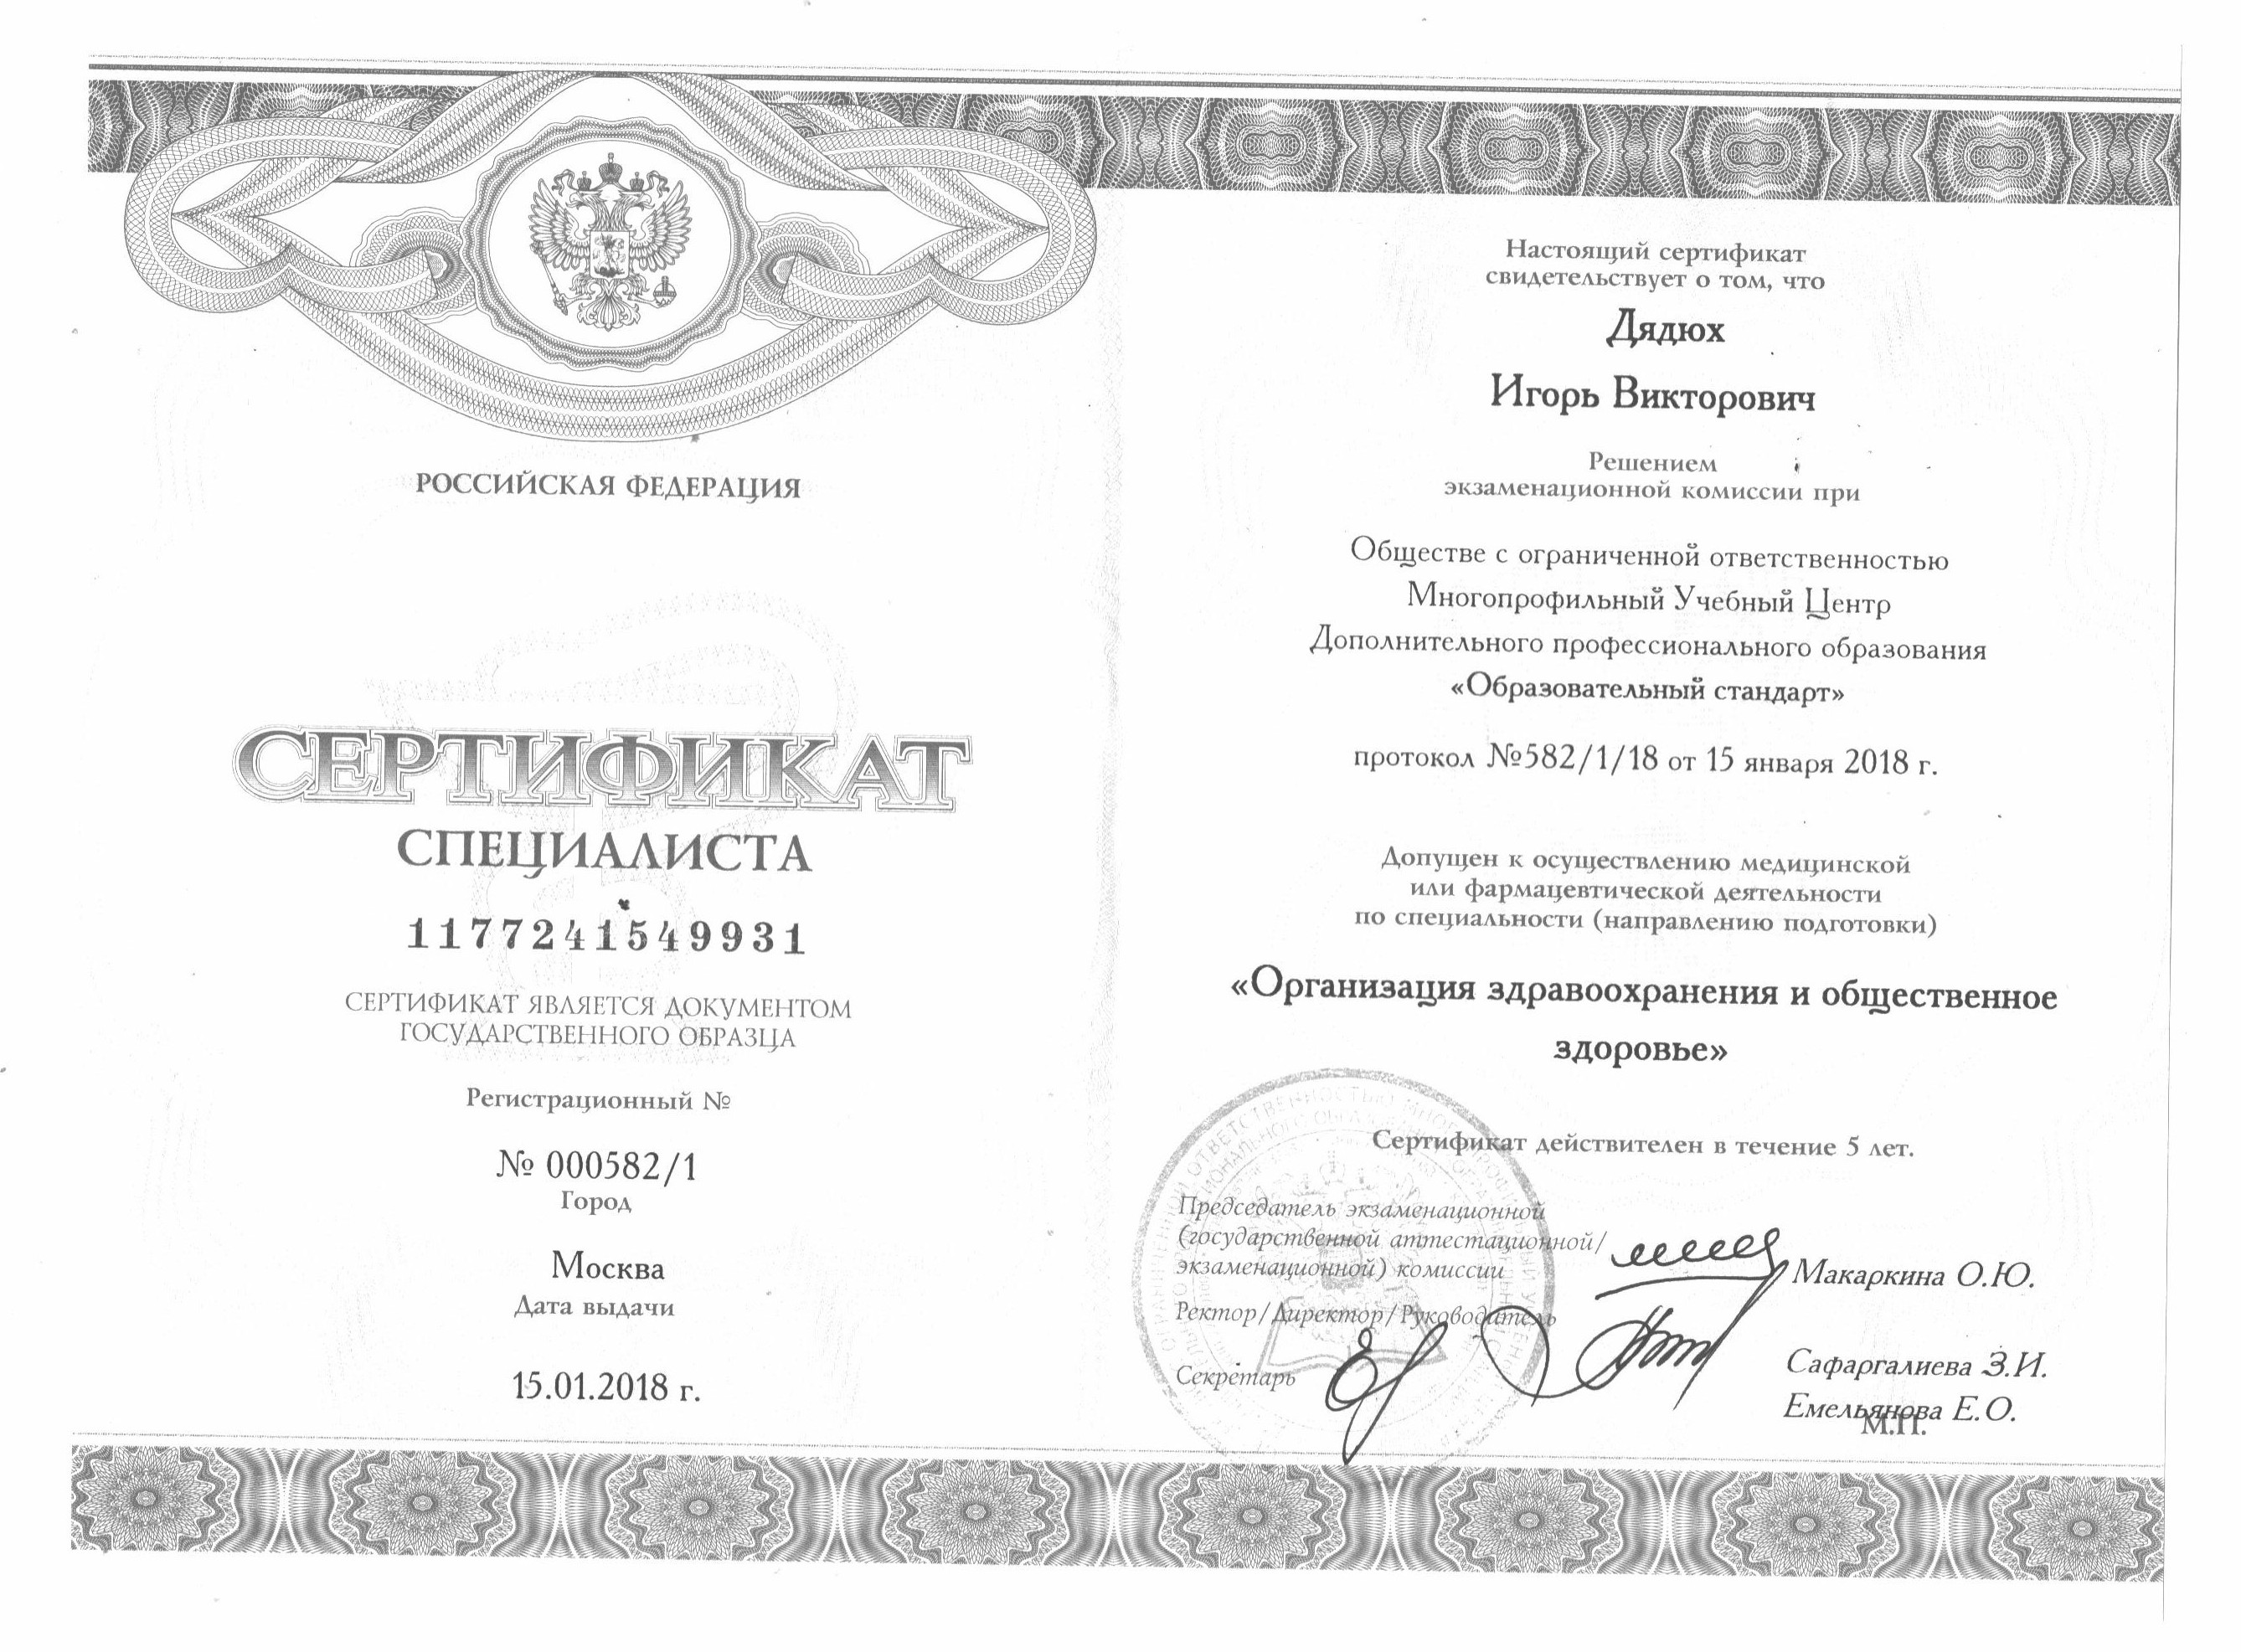 Сертификат Здоровье Дядюх Игорь Викторович